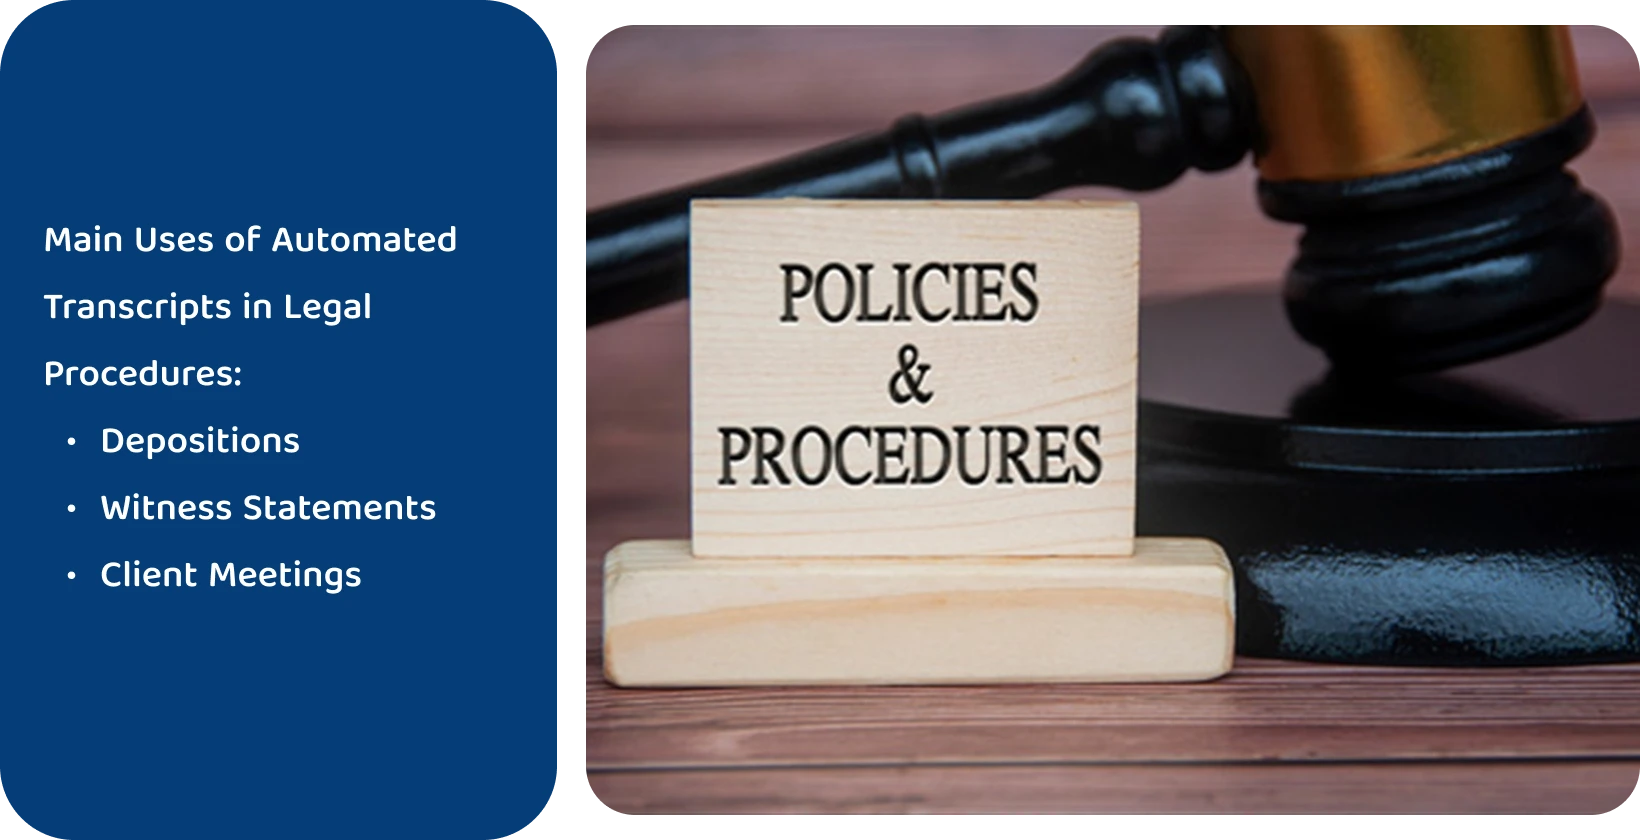 Gavel bên cạnh biển 'Chính sách & Thủ tục', đại diện cho các tiêu chuẩn pháp lý được đáp ứng bởi các công cụ phiên âm tự động.